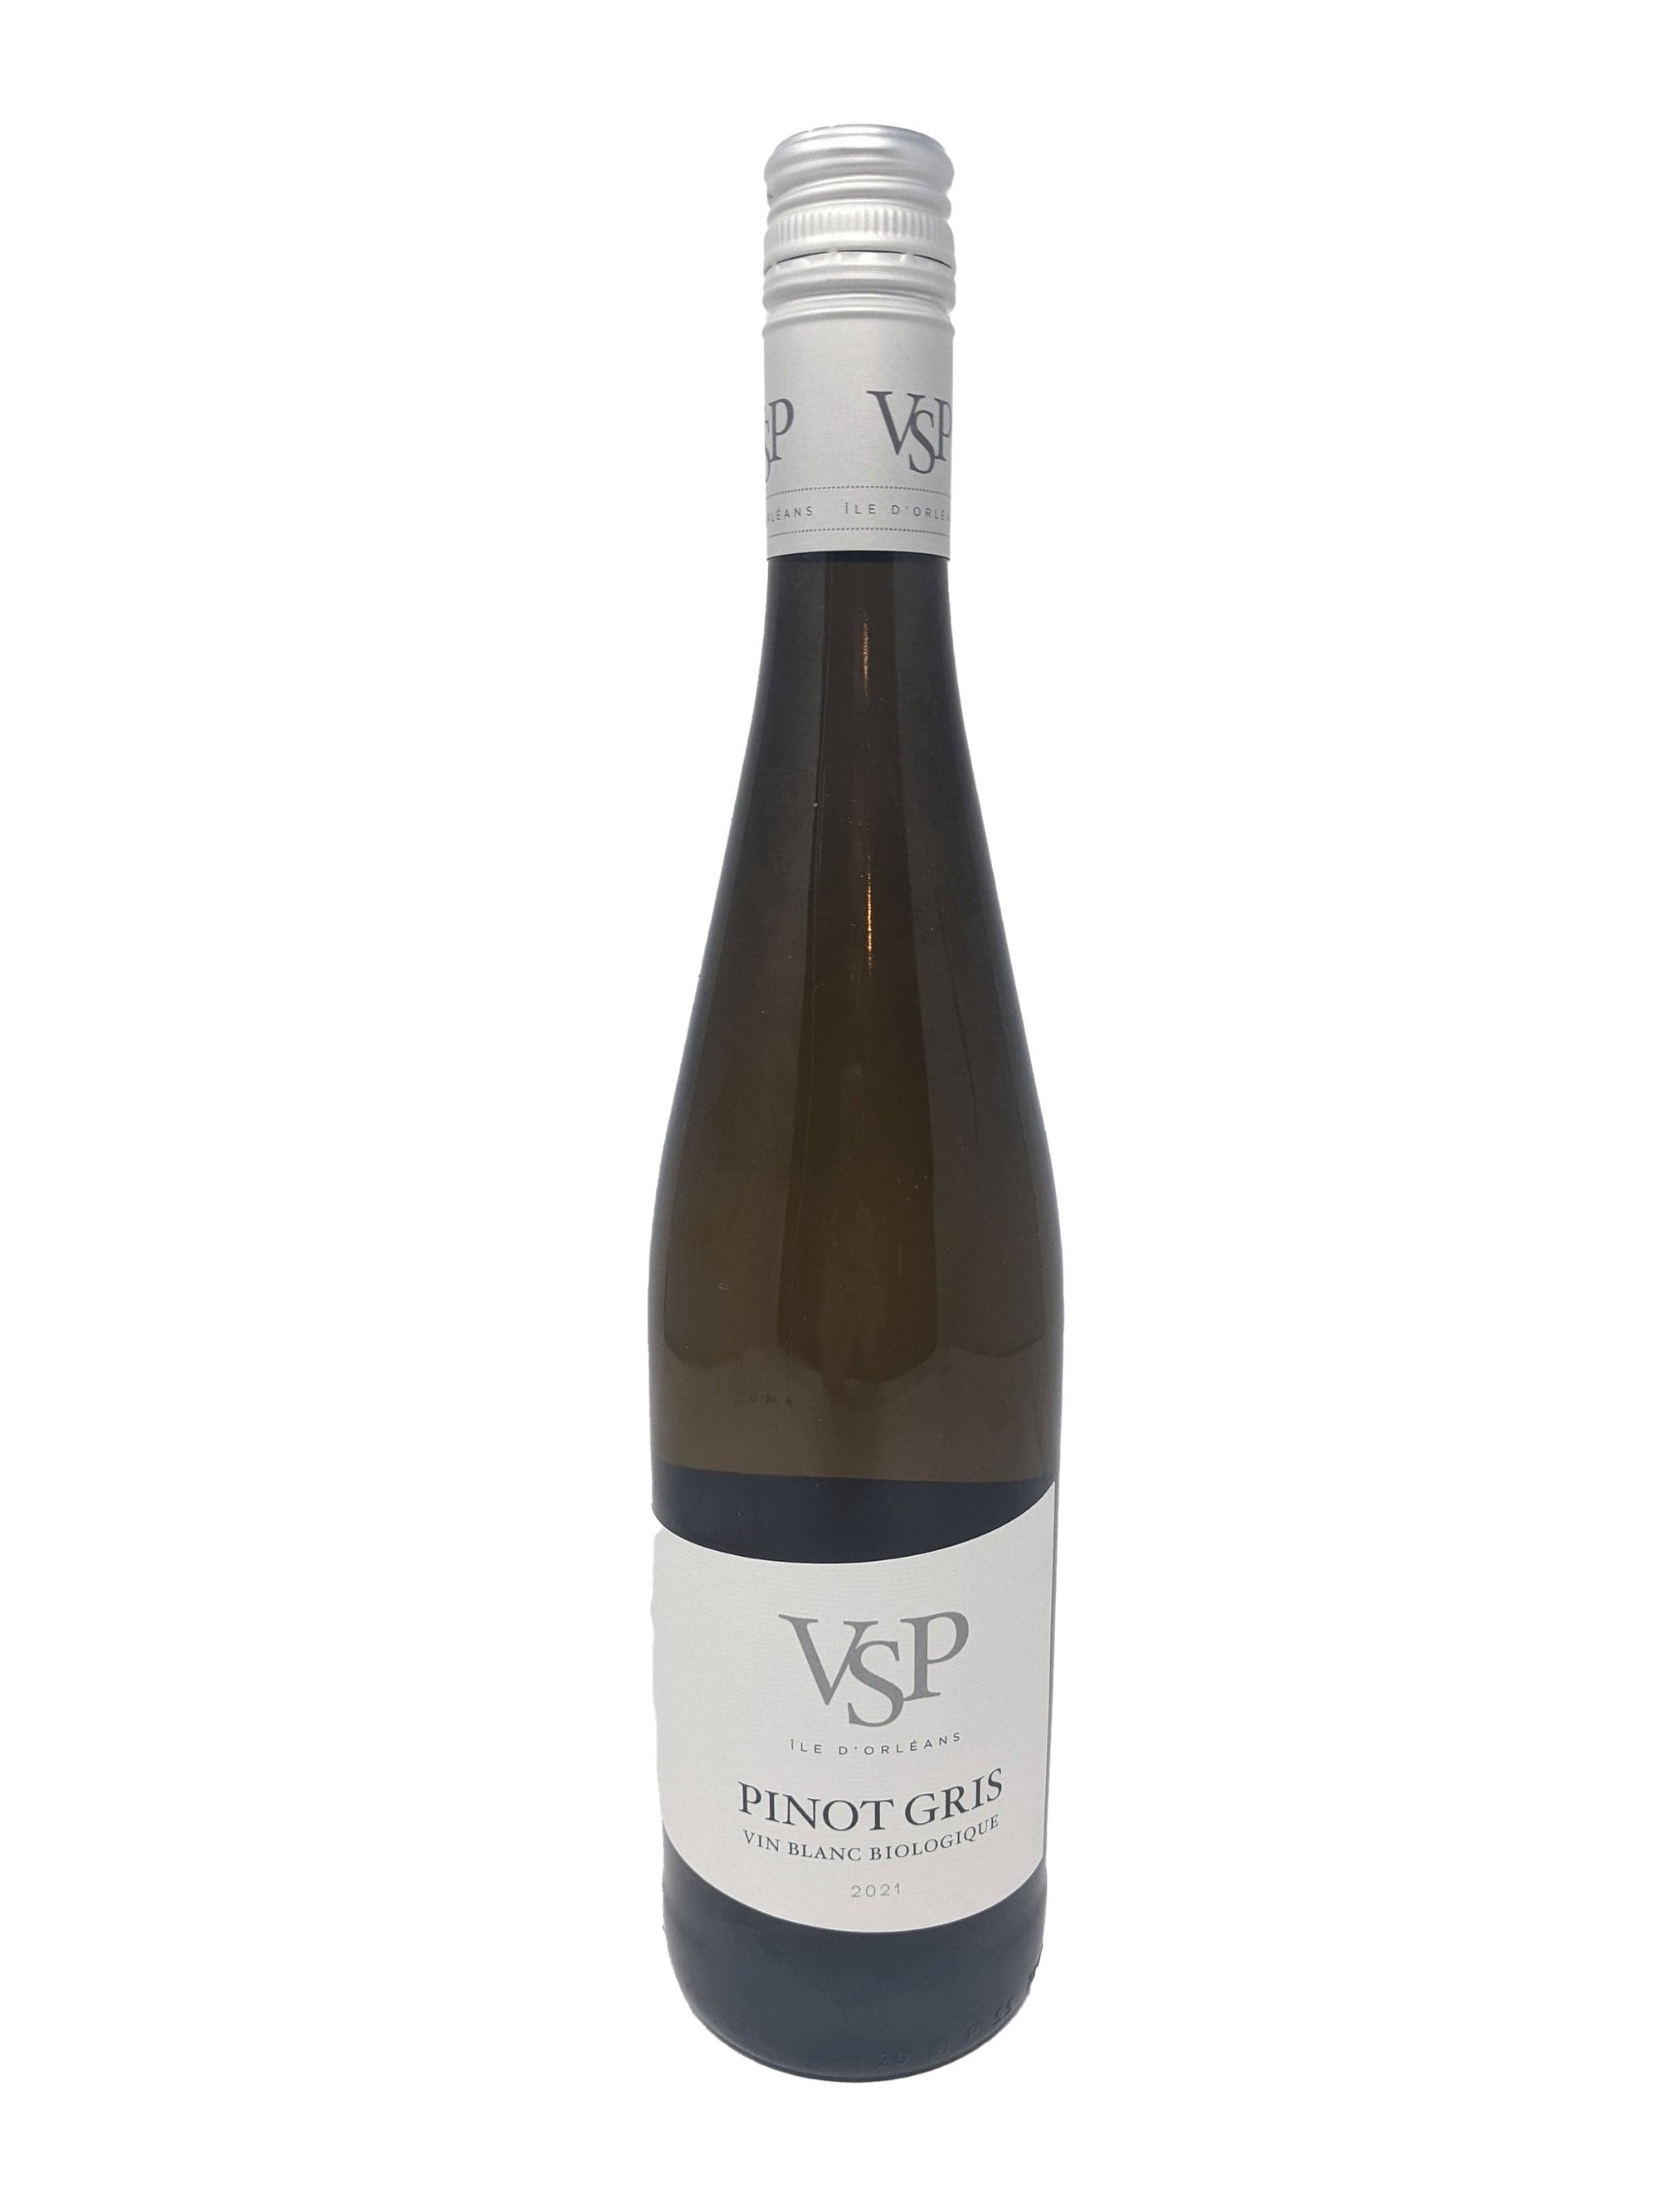 Vignoble Ste-Pétronille Pinot Gris - Vin blanc du Vignoble Ste-Pétronille